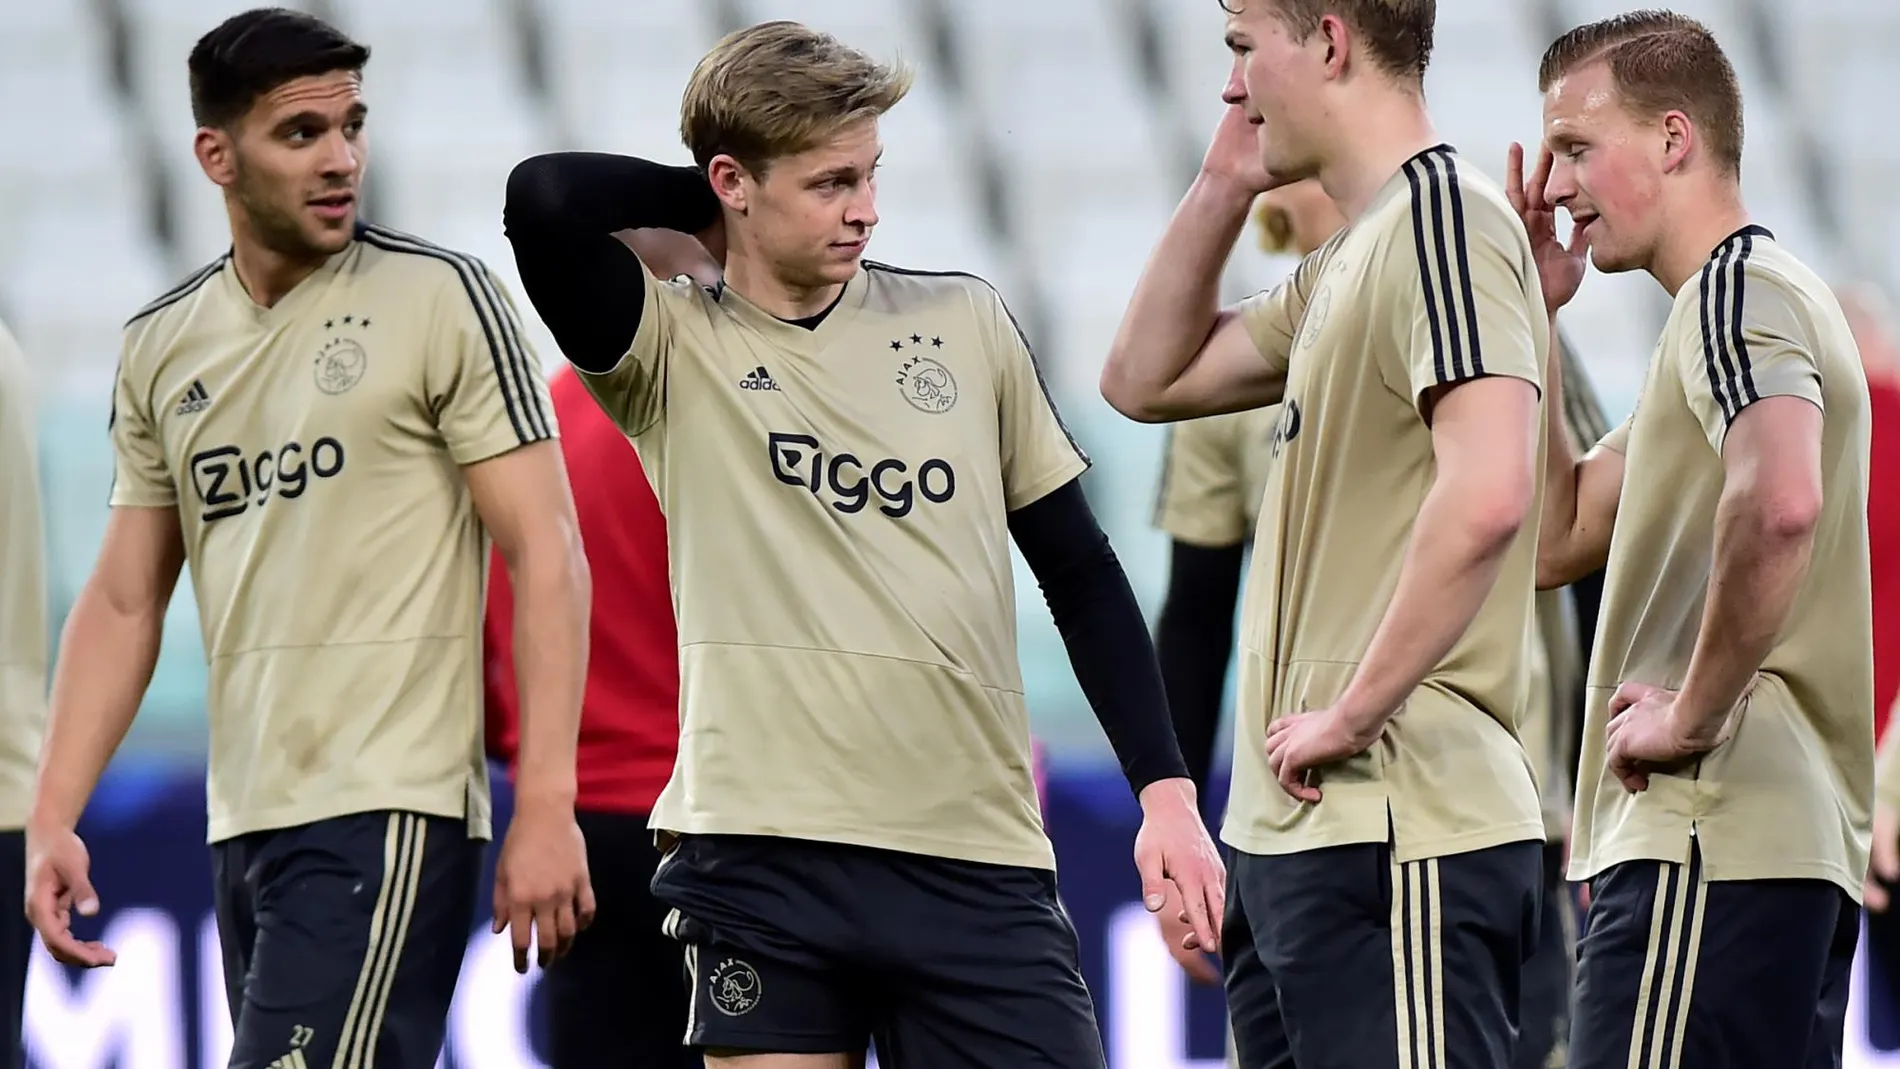 De Jong, en el centro, es la principal duda del Ajax